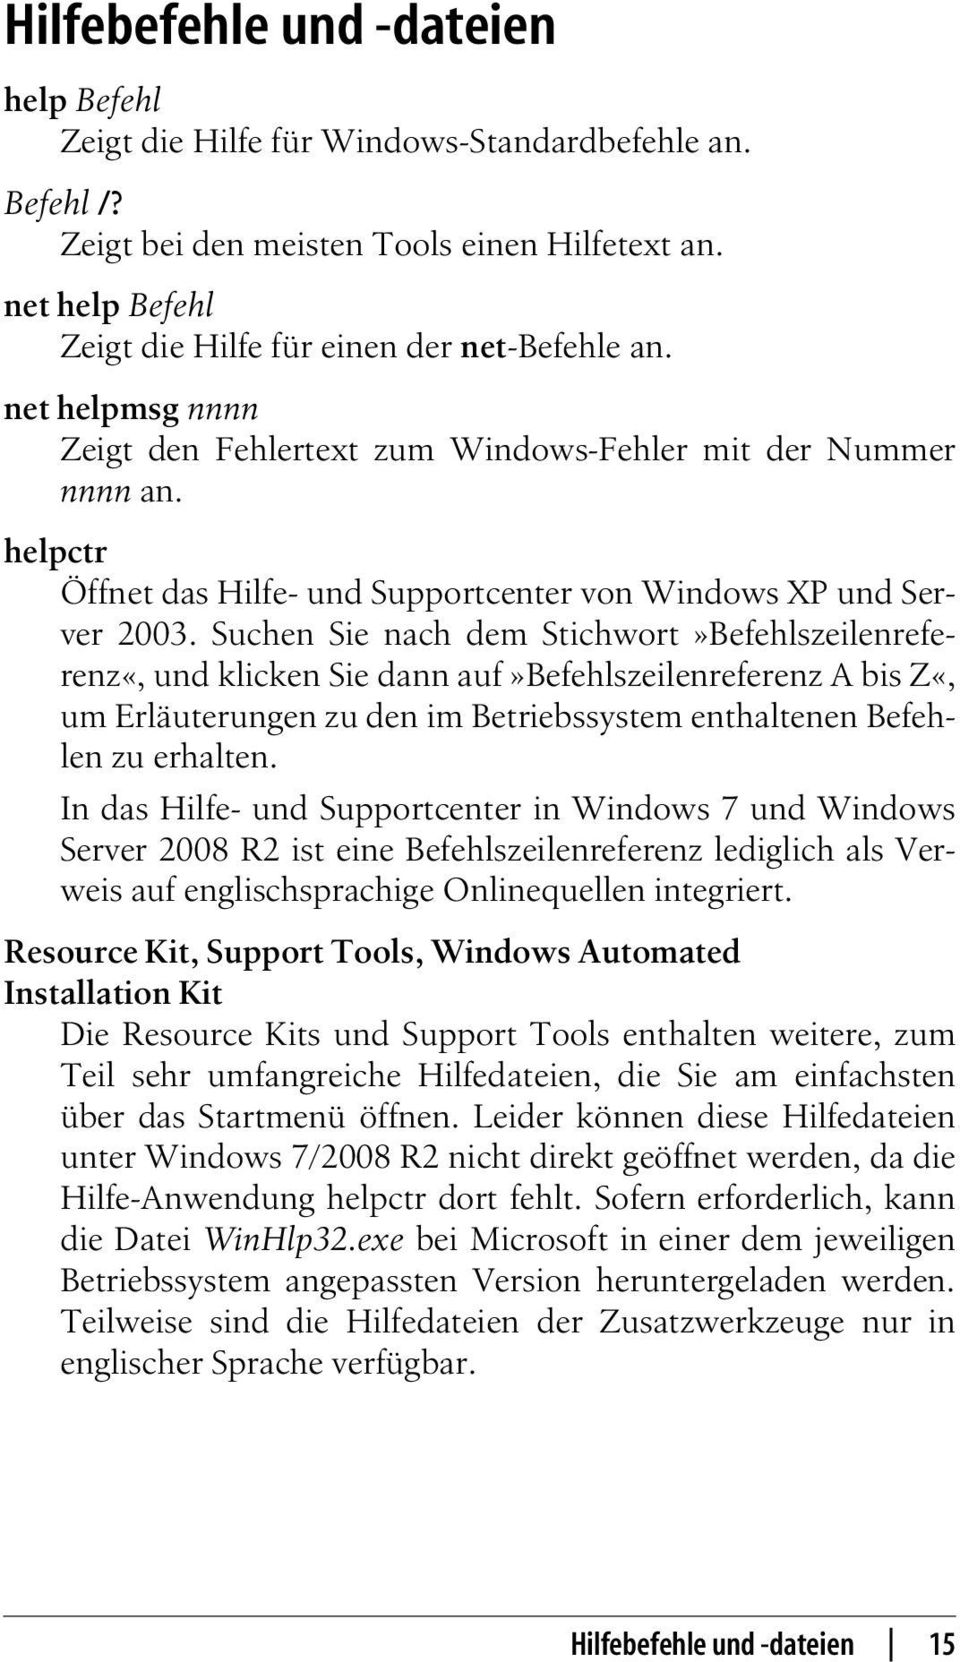 helpctr Öffnet das Hilfe- und Supportcenter von Windows XP und Server 2003.